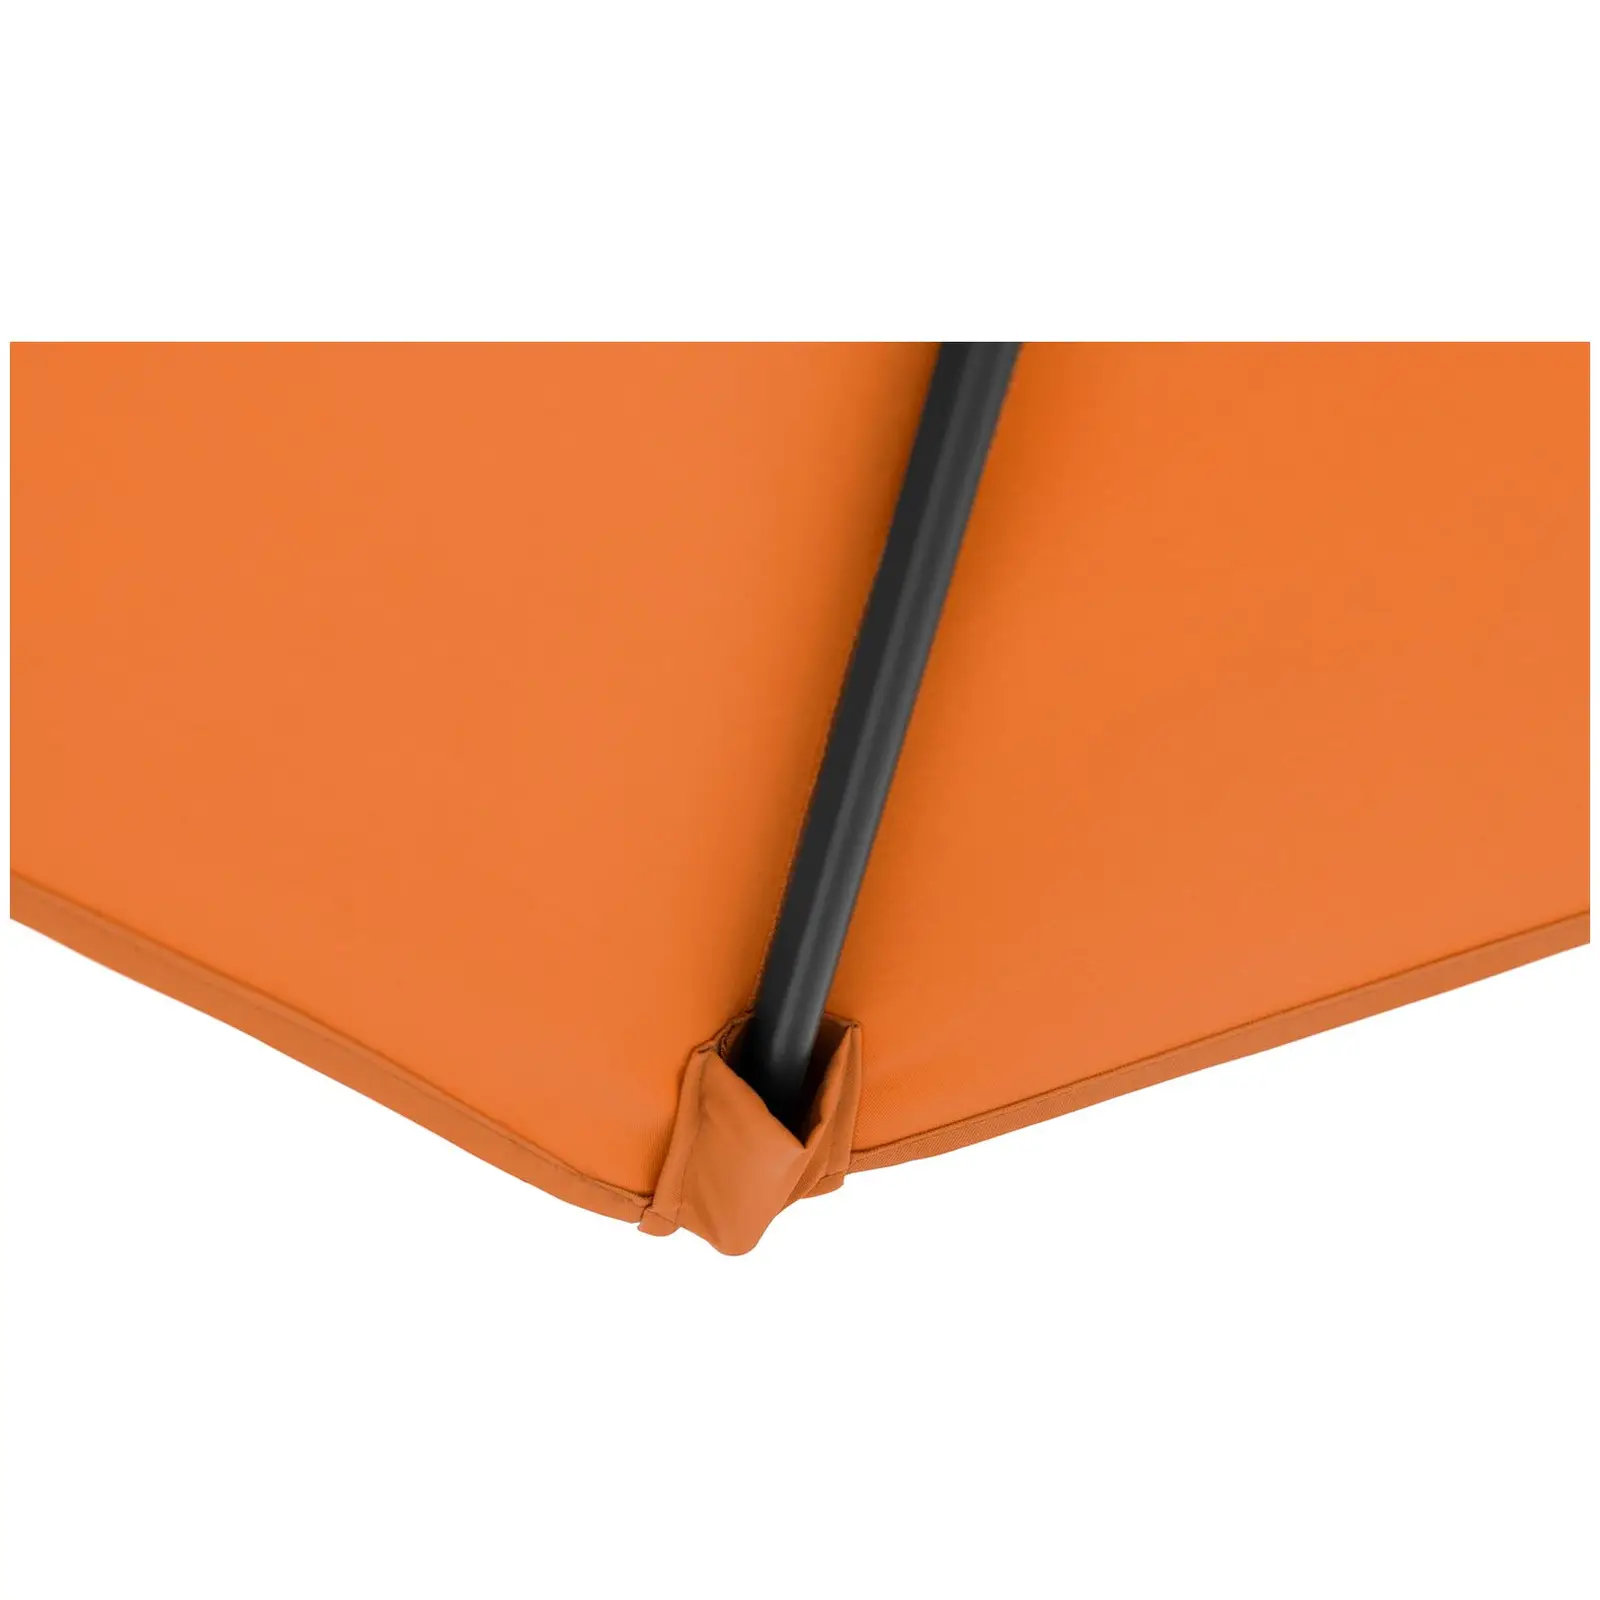 Sonnenschirm groß - orange - sechseckig - Ø 300 cm - neigbar